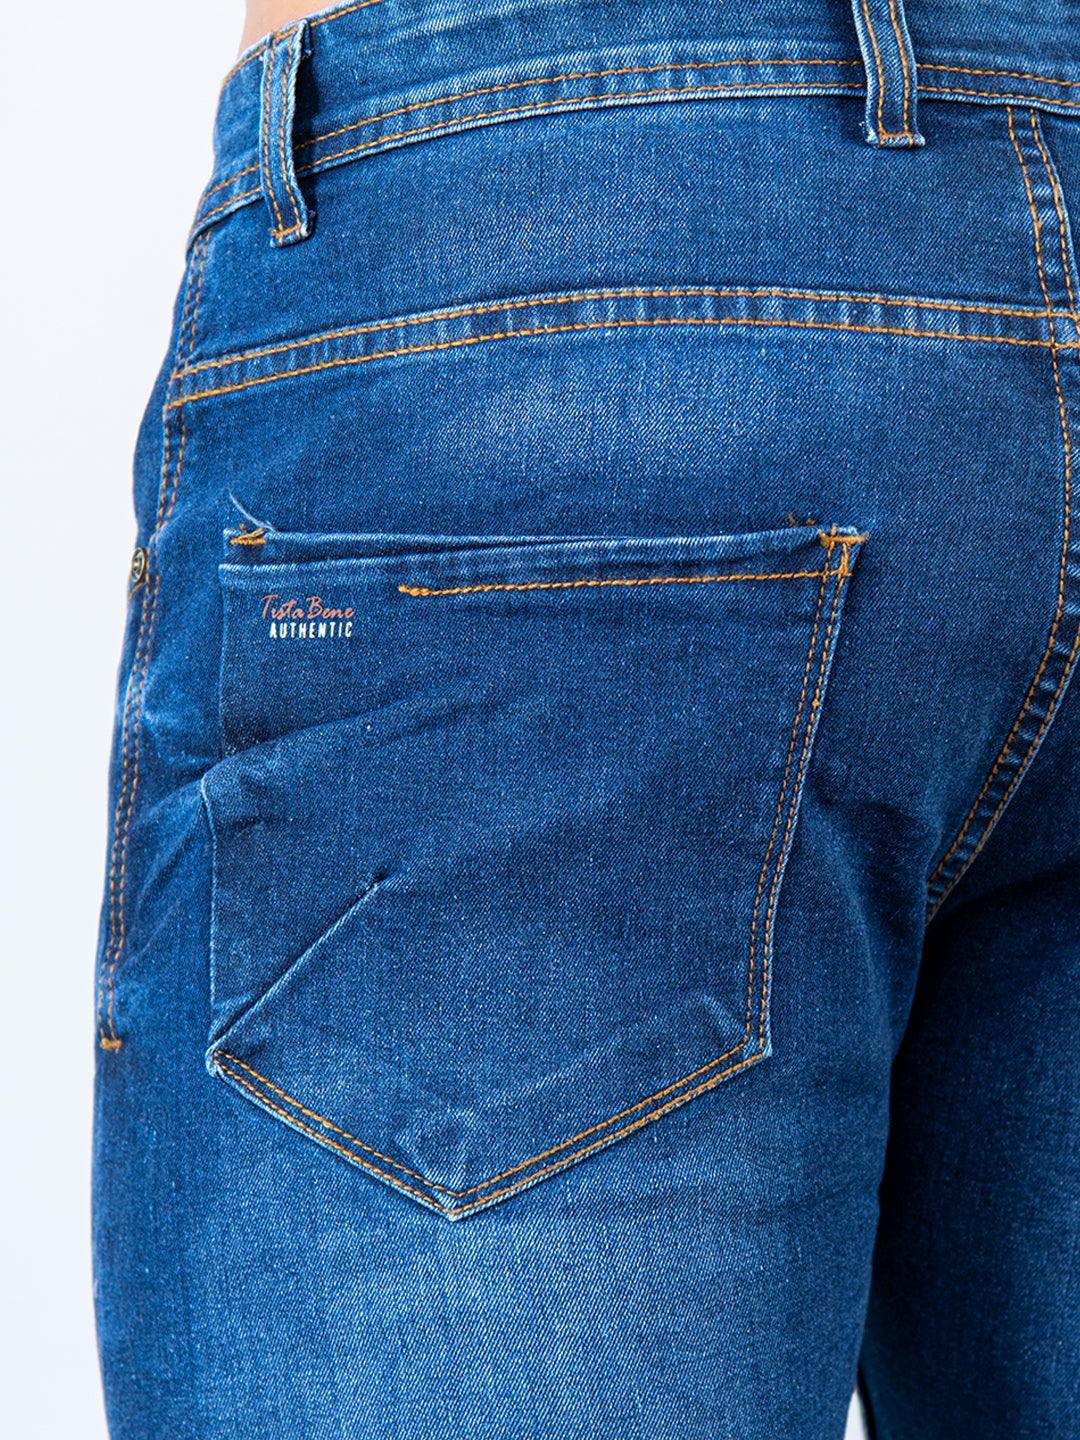 Men's Jeans for sale in Mount Observation | Facebook Marketplace | Facebook